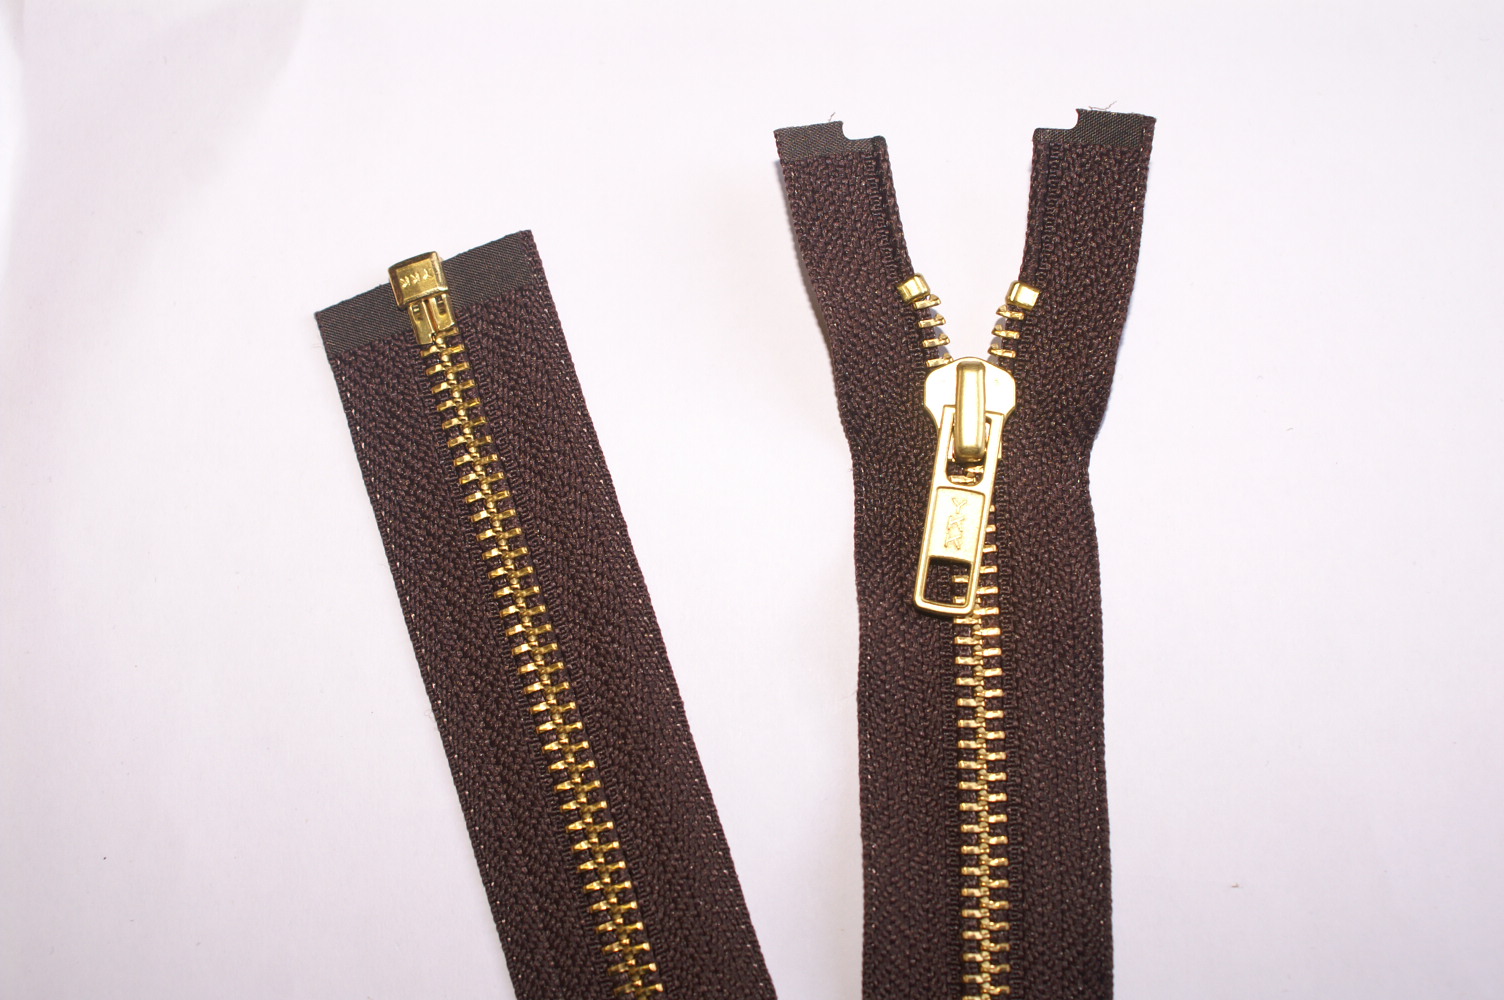 61cms/24" Open-Ended Antique Gold Colour Zip